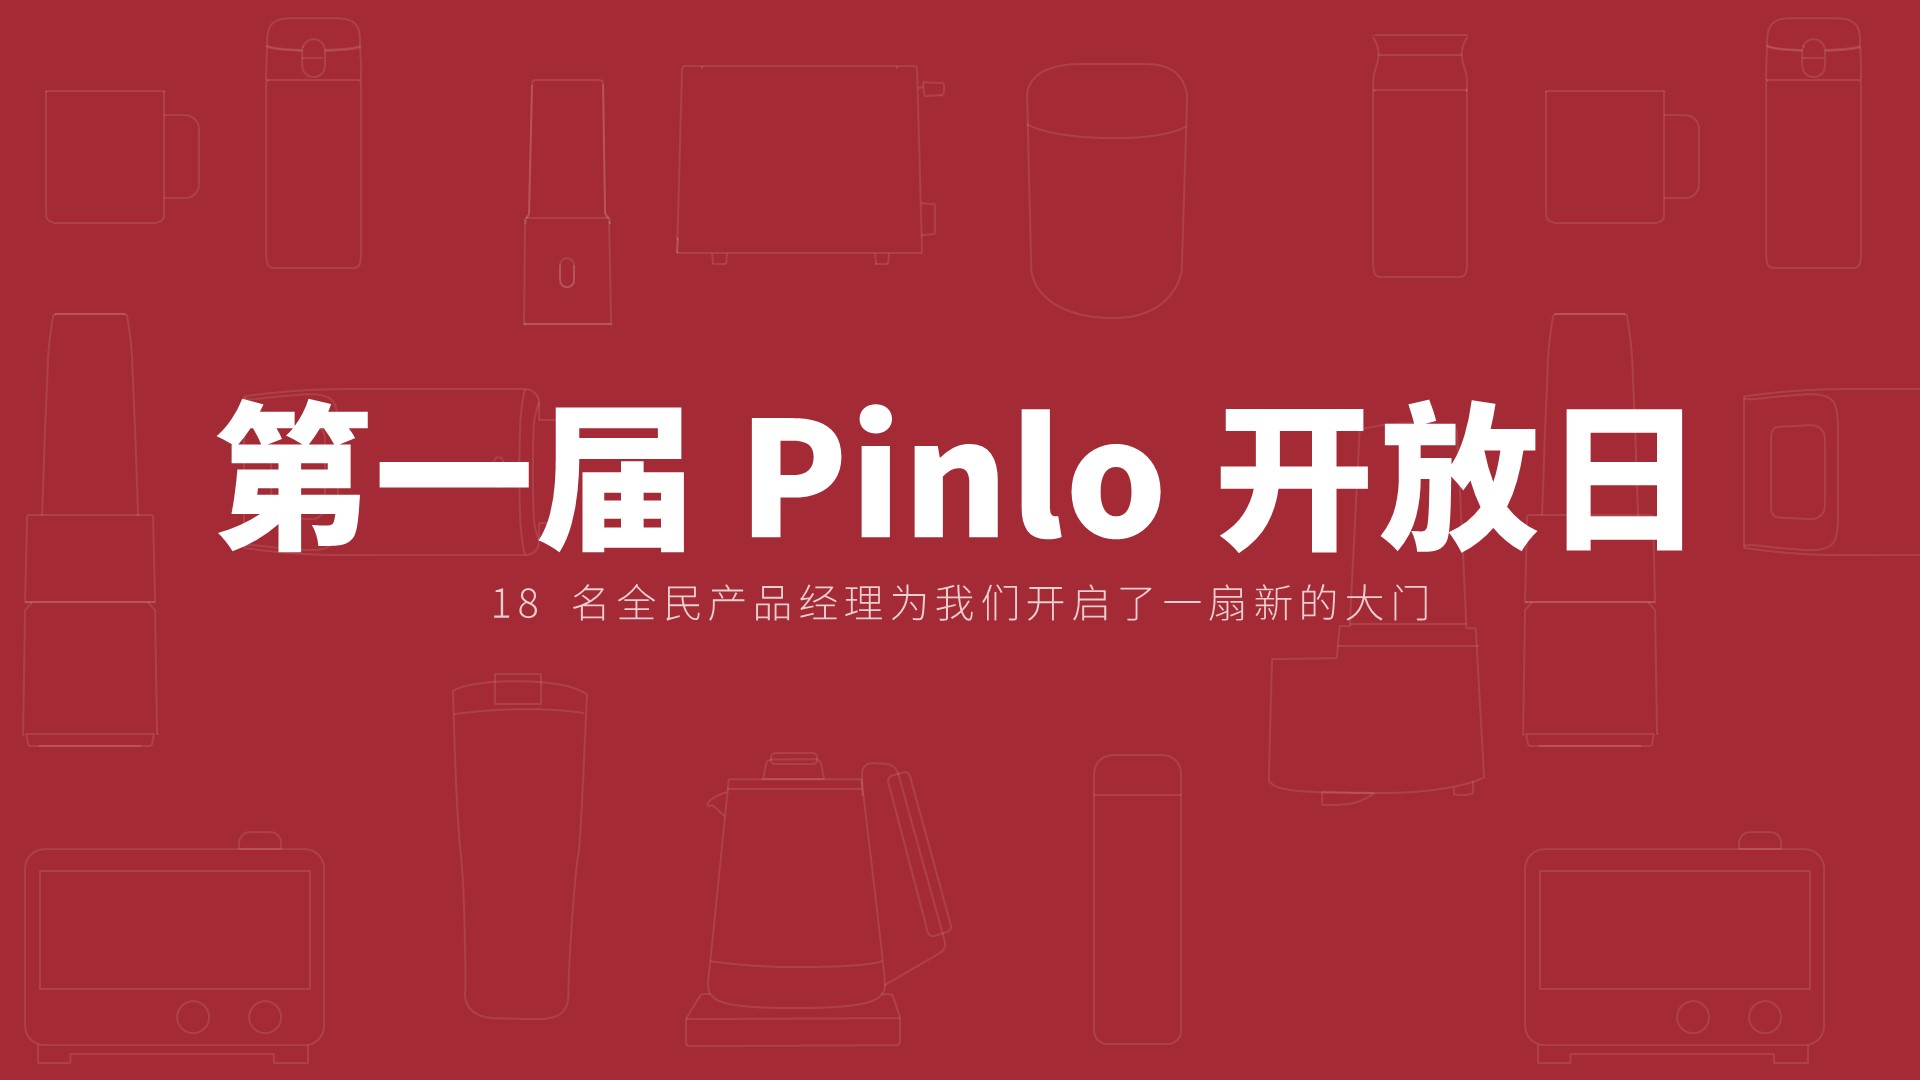 第一届 Pinlo 开放日